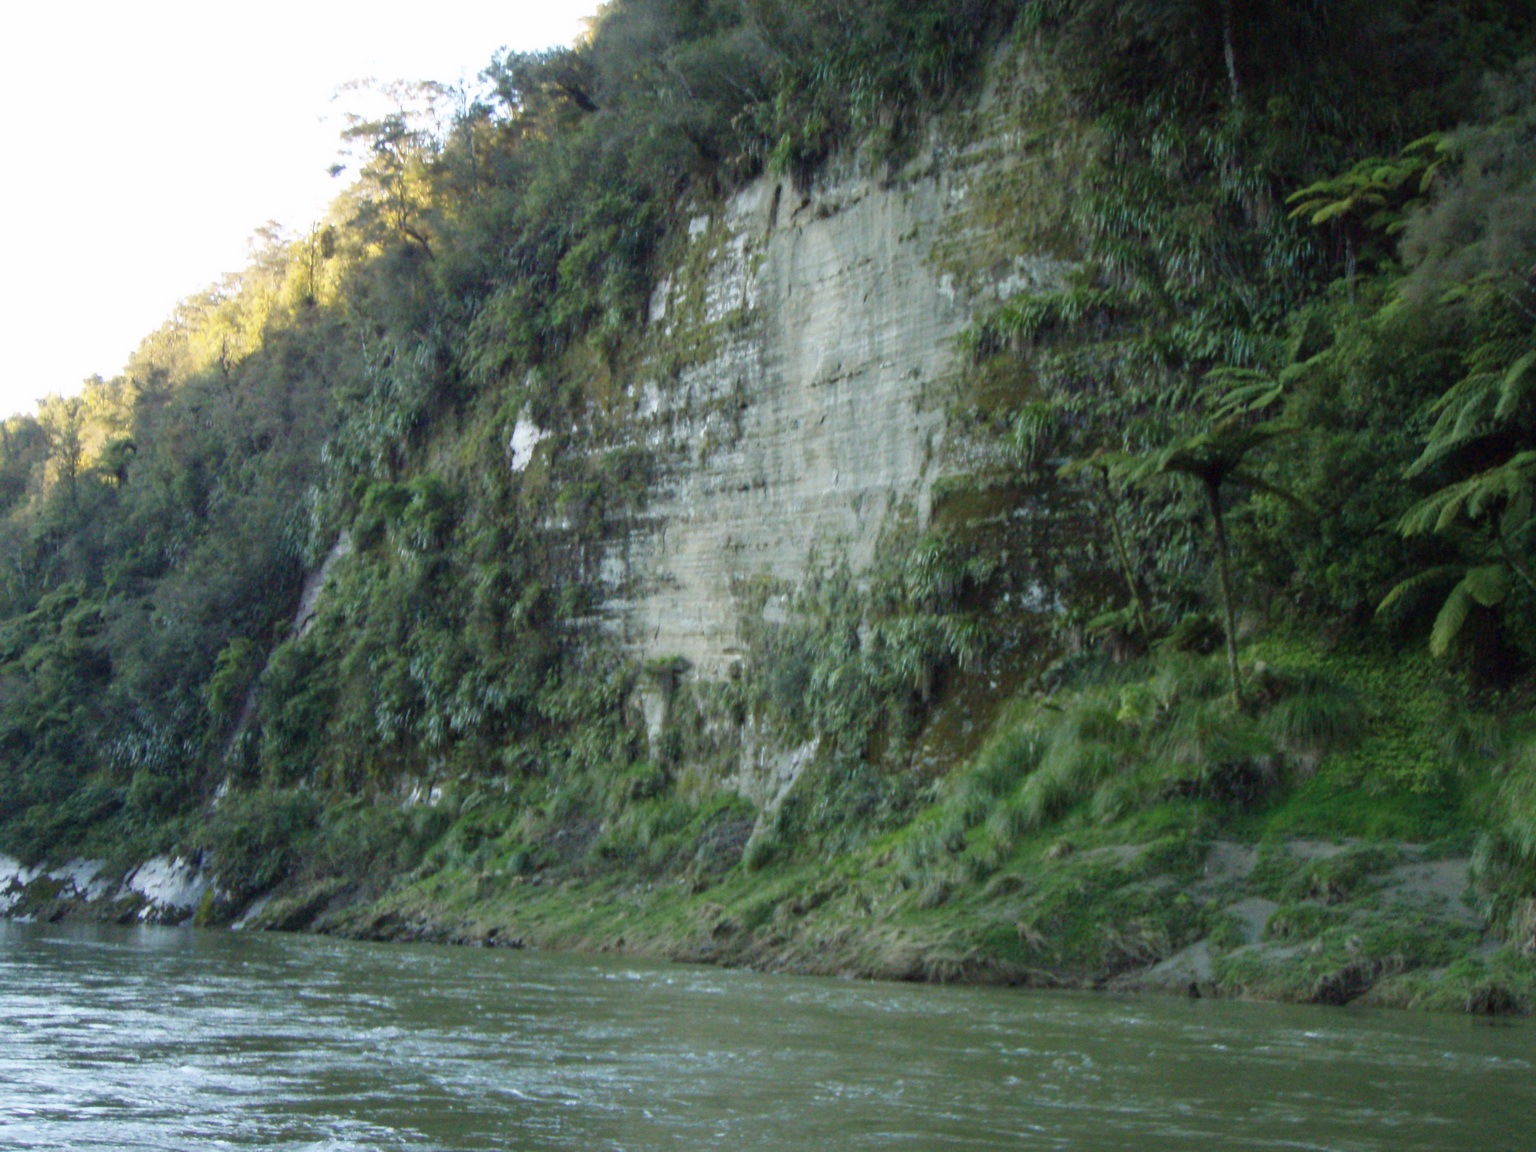 shots of river bank